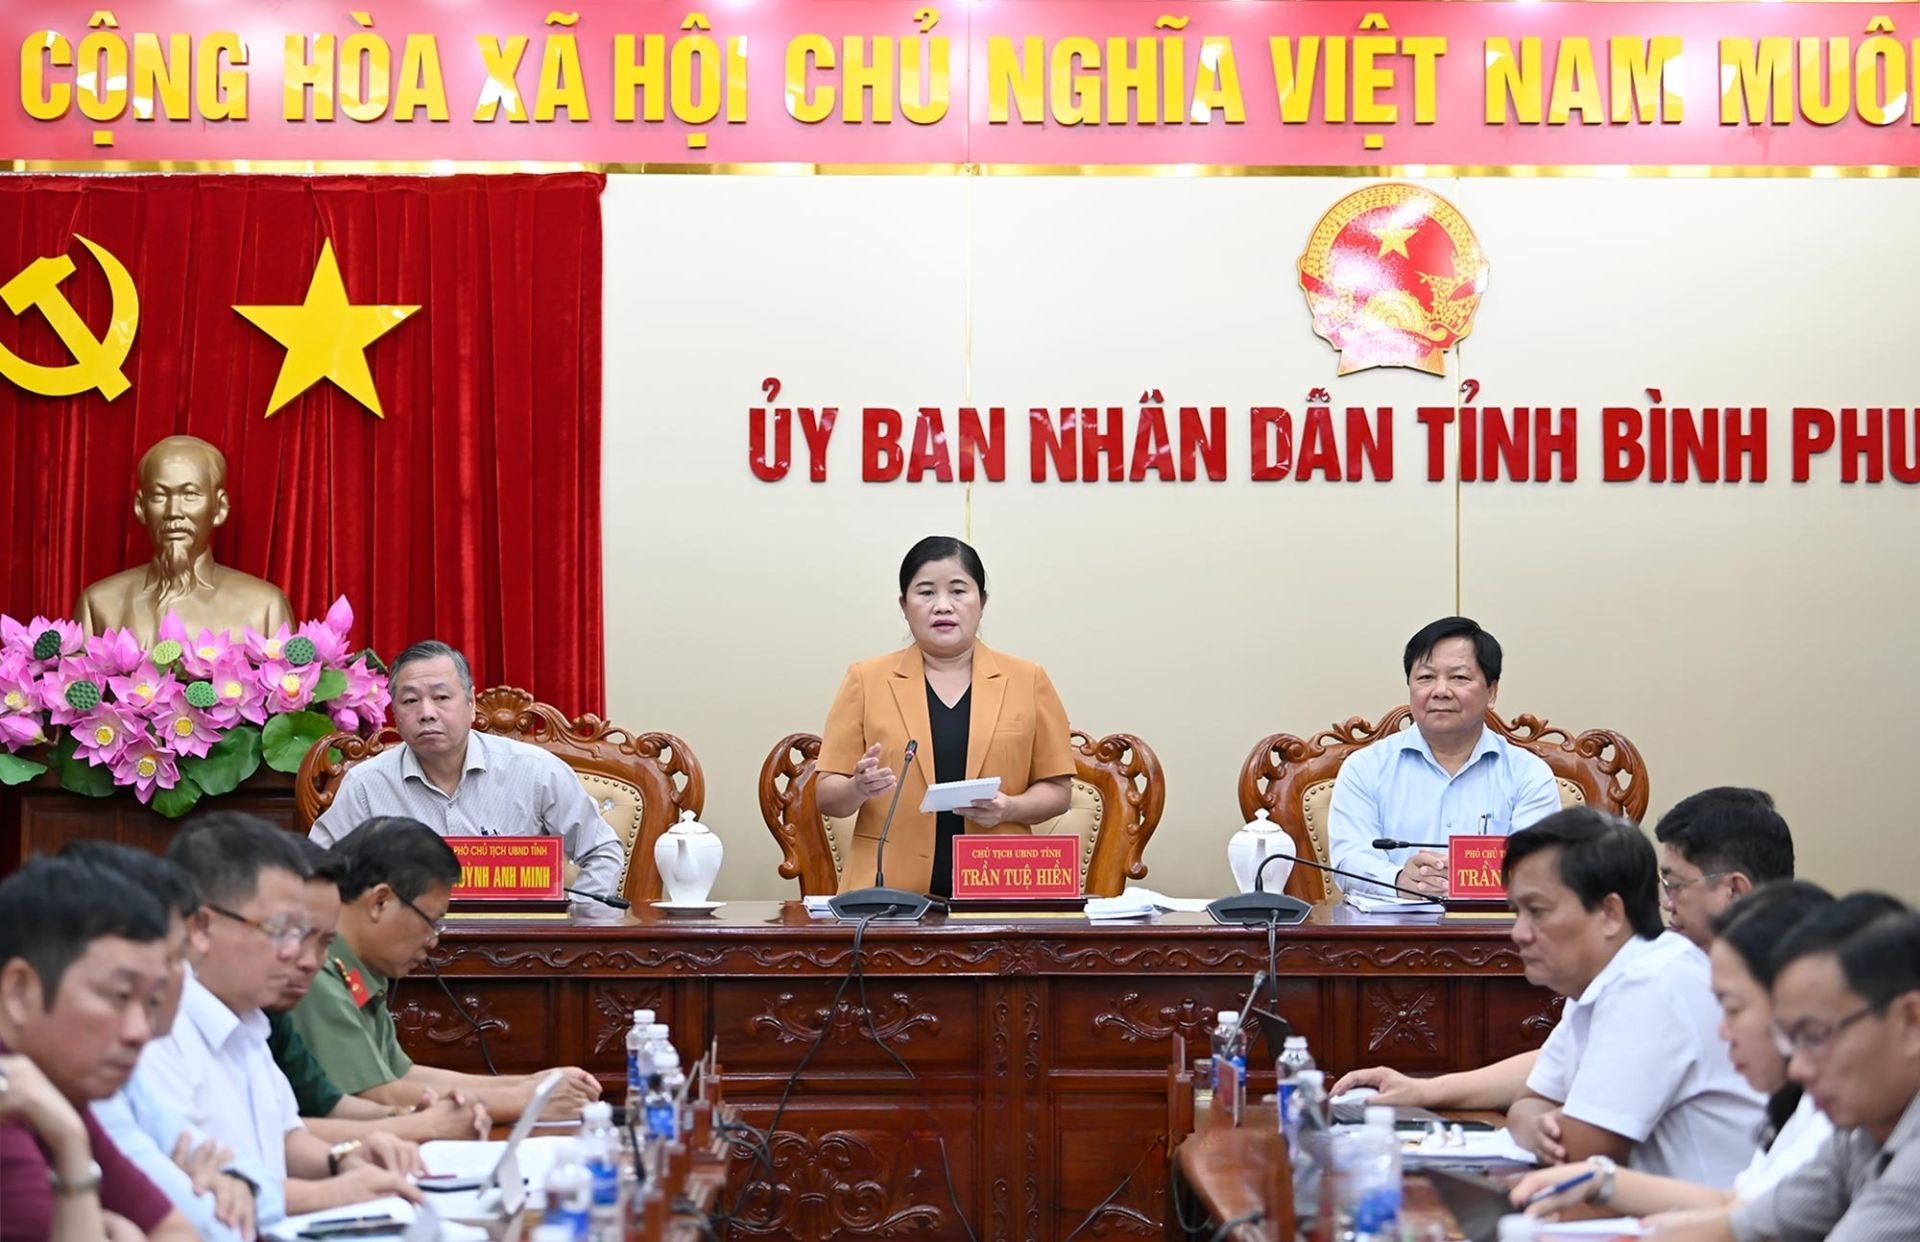 Chủ tịch UBND tỉnh Bình Phước - Bà Trần Tuệ Hiền phát biểu chỉ đạo